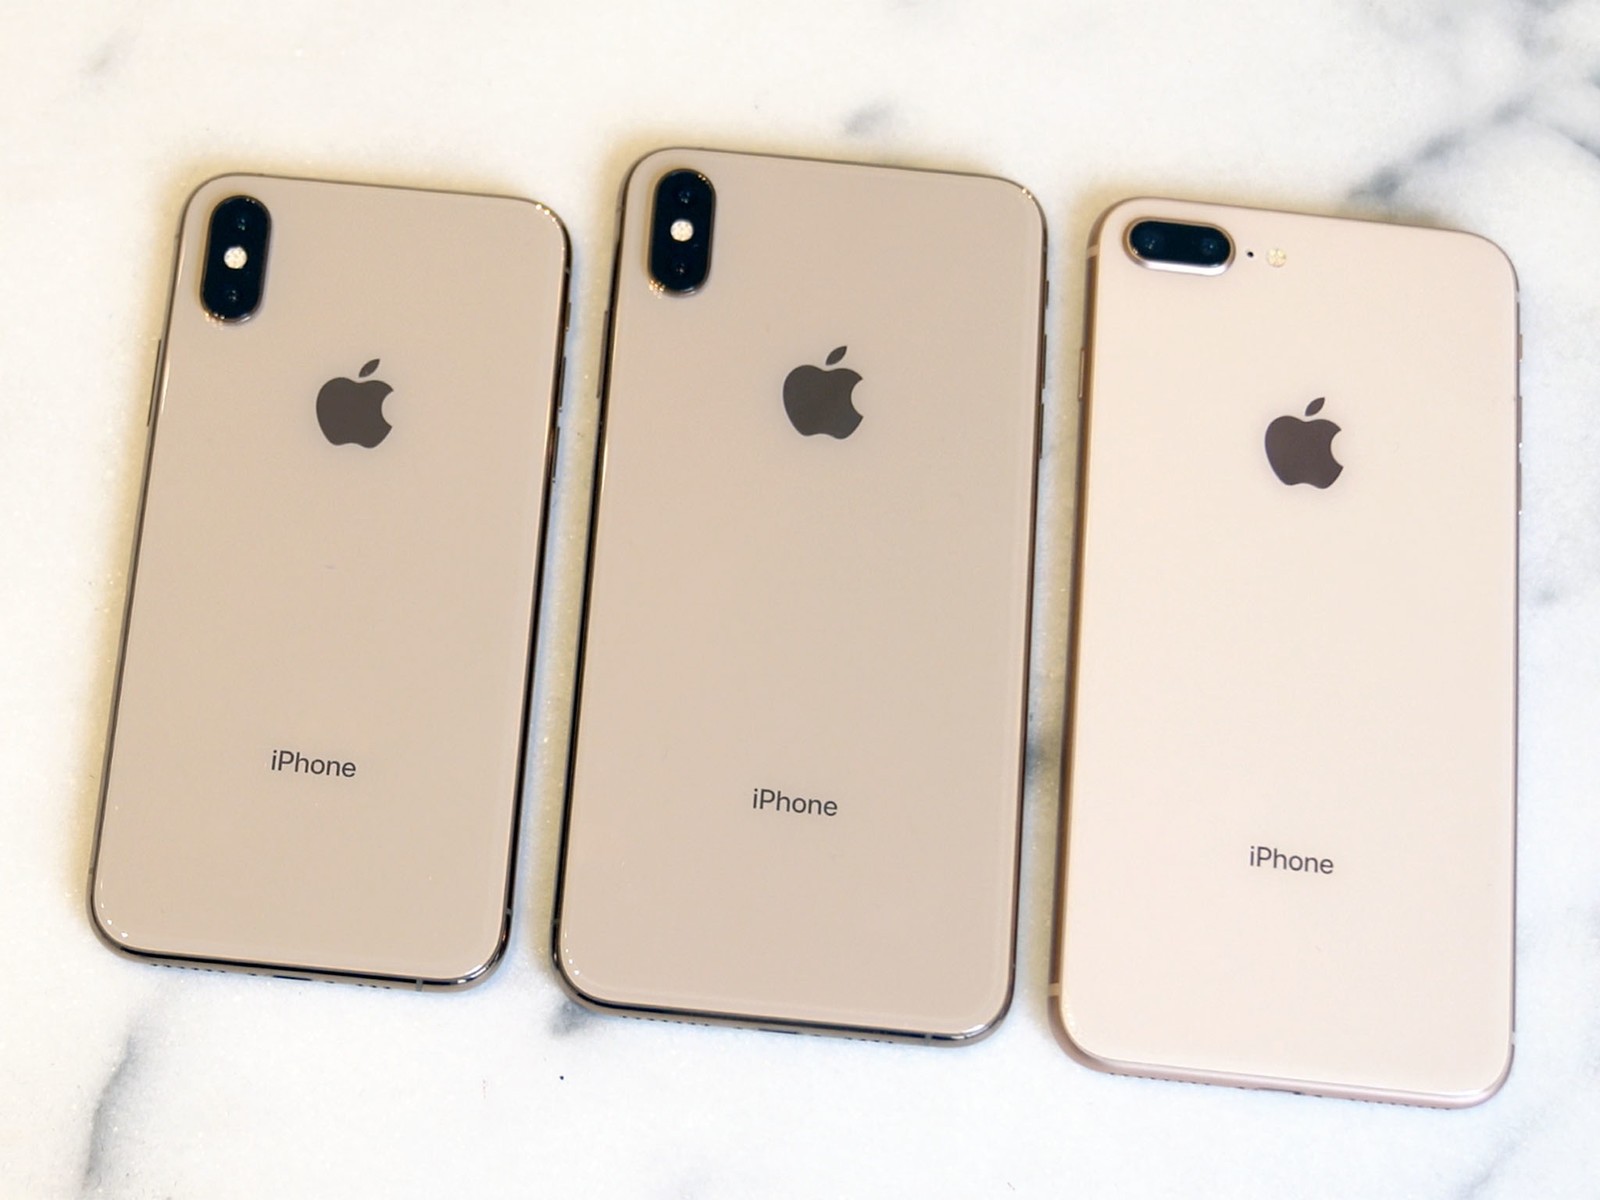 iPhone Xs, iPhone Xs Max и iPhone 8 Plus